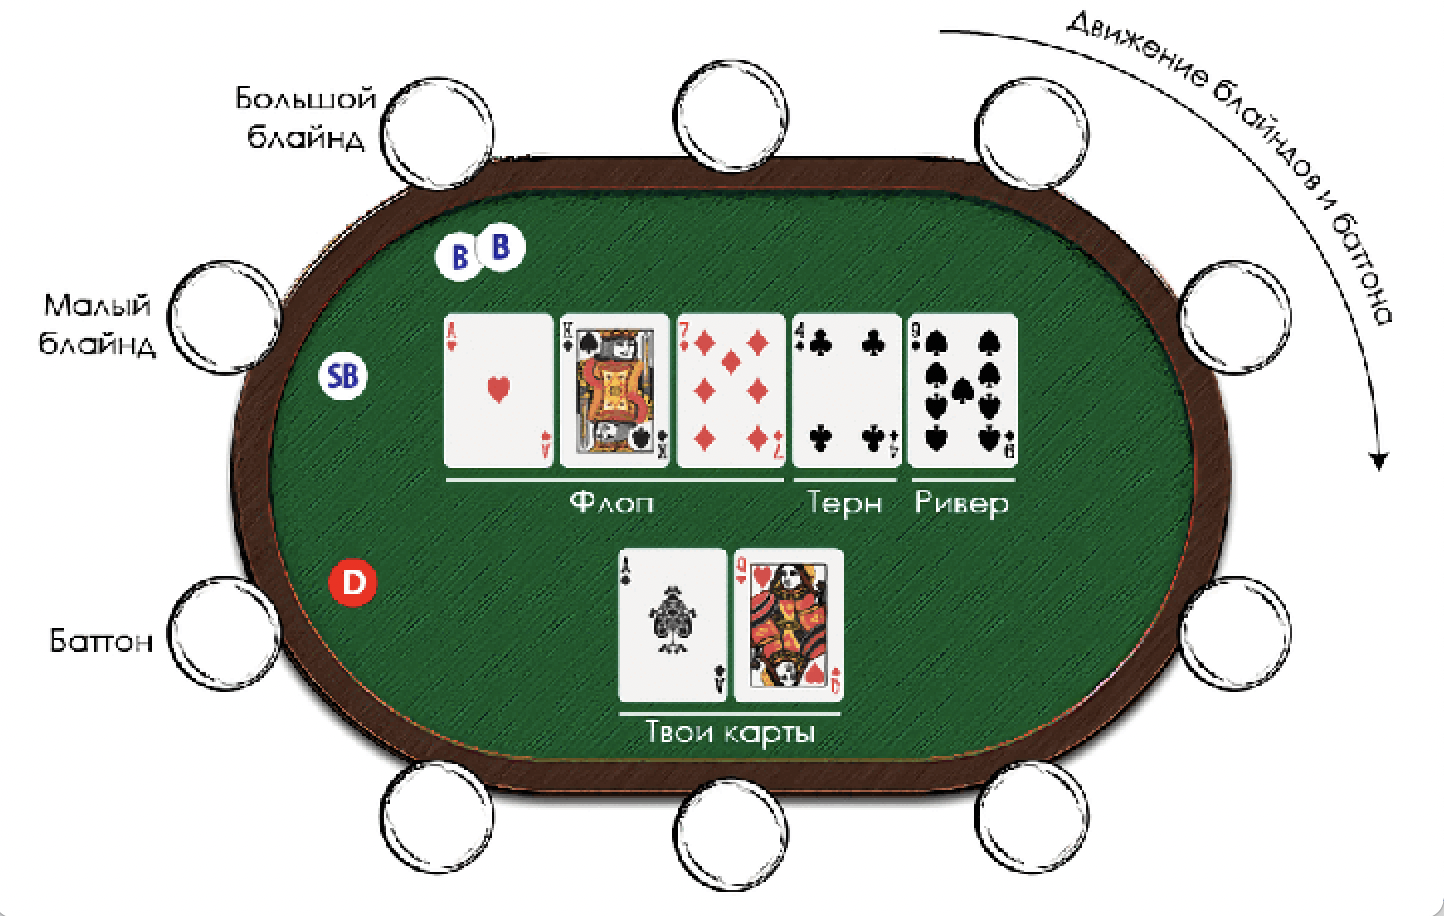 Раскладка покер техасский холдем. Техасский холдем малый и большой блайнд. Уровни блайндов в покере холдем. Малый блайнд и большой блайнд в покере что это. Позиции игроков в холдеме.